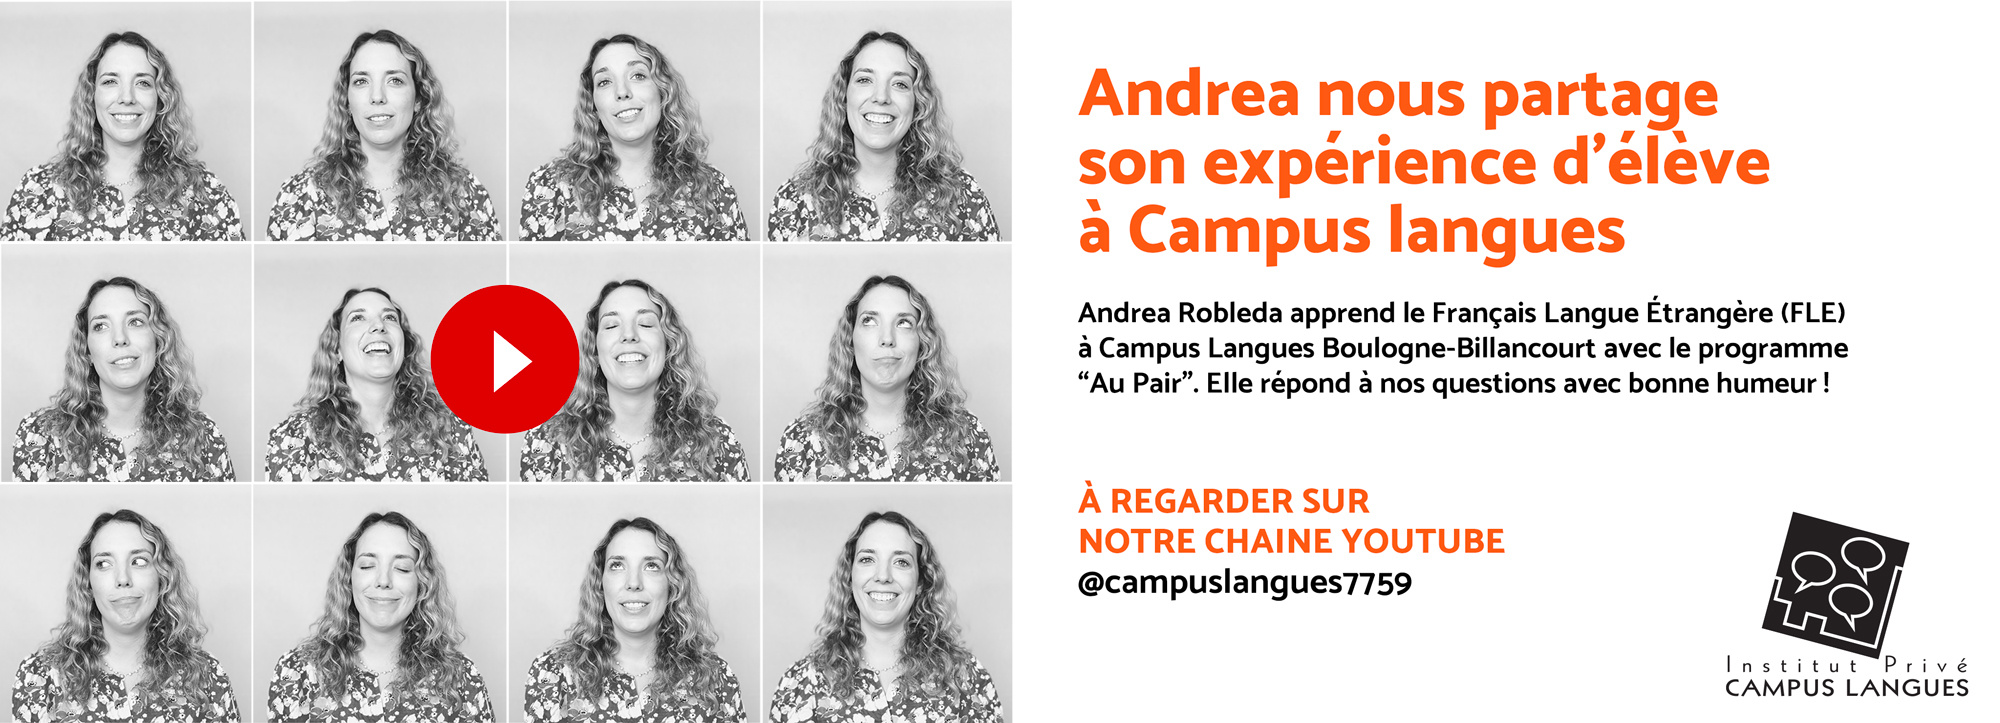 Illustration - Andrea nous partage son expérience d'élève à Campus langues